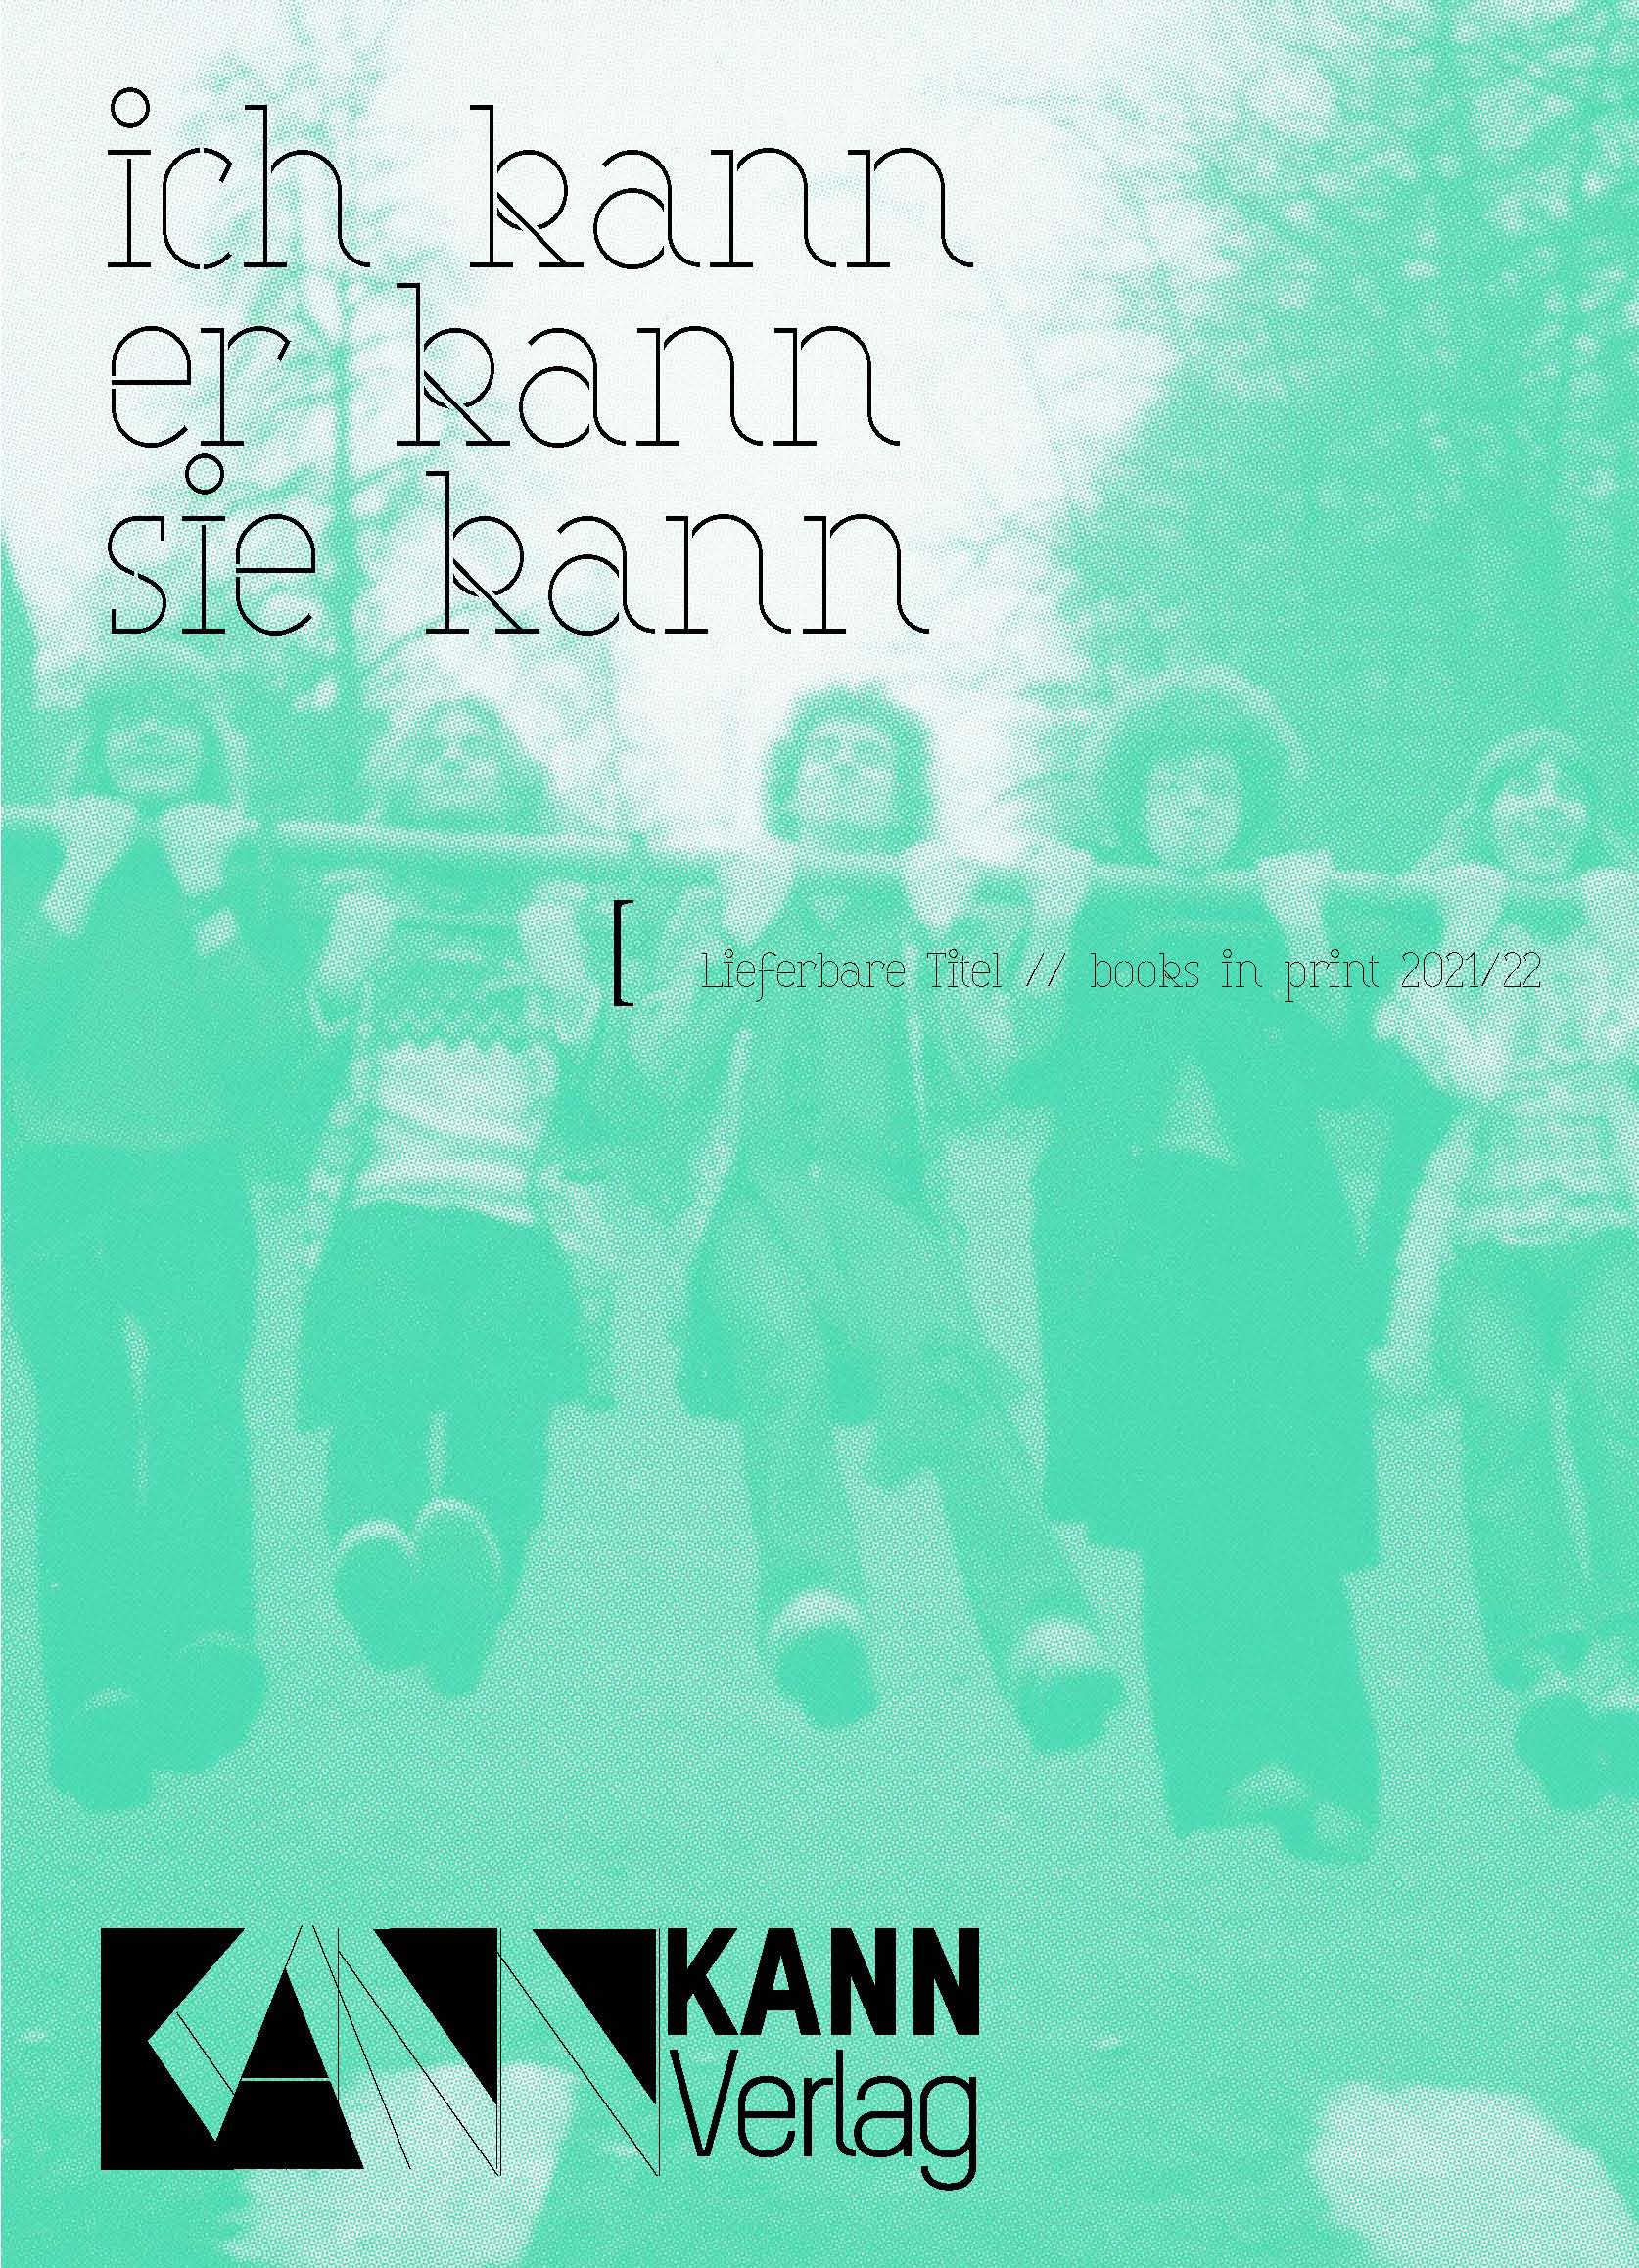 Flyer KANN Verlag green 21